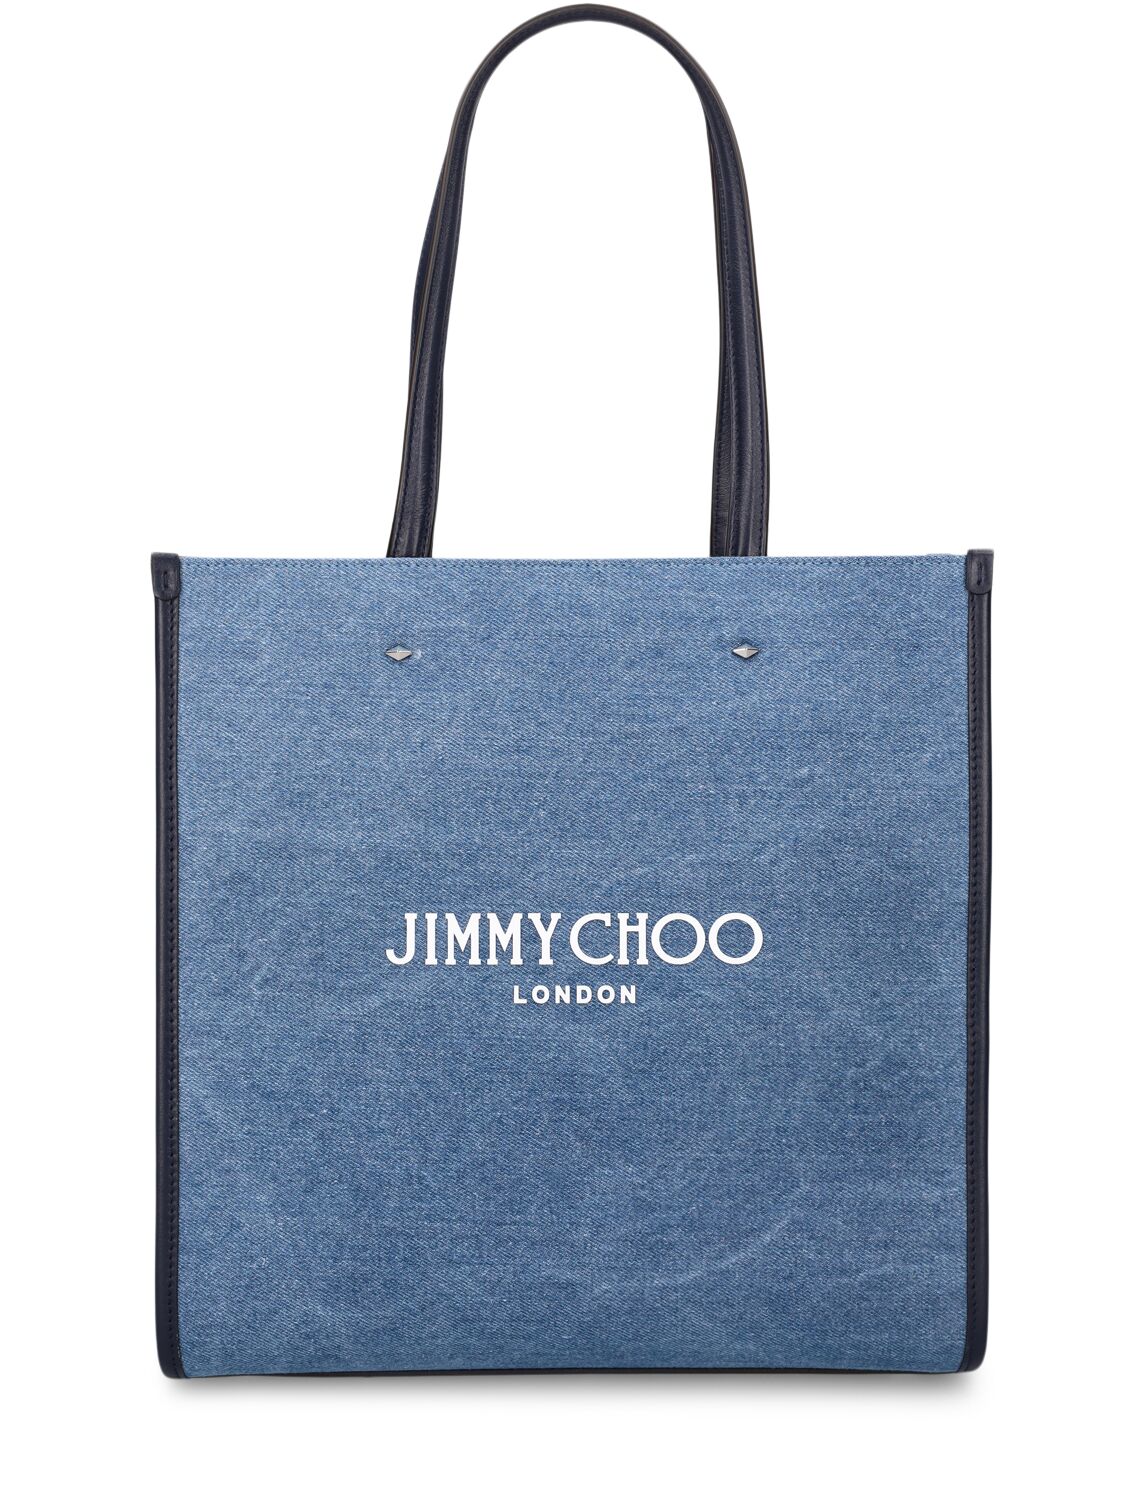 Jimmy Choo Logo牛仔托特包 In Denim,navy